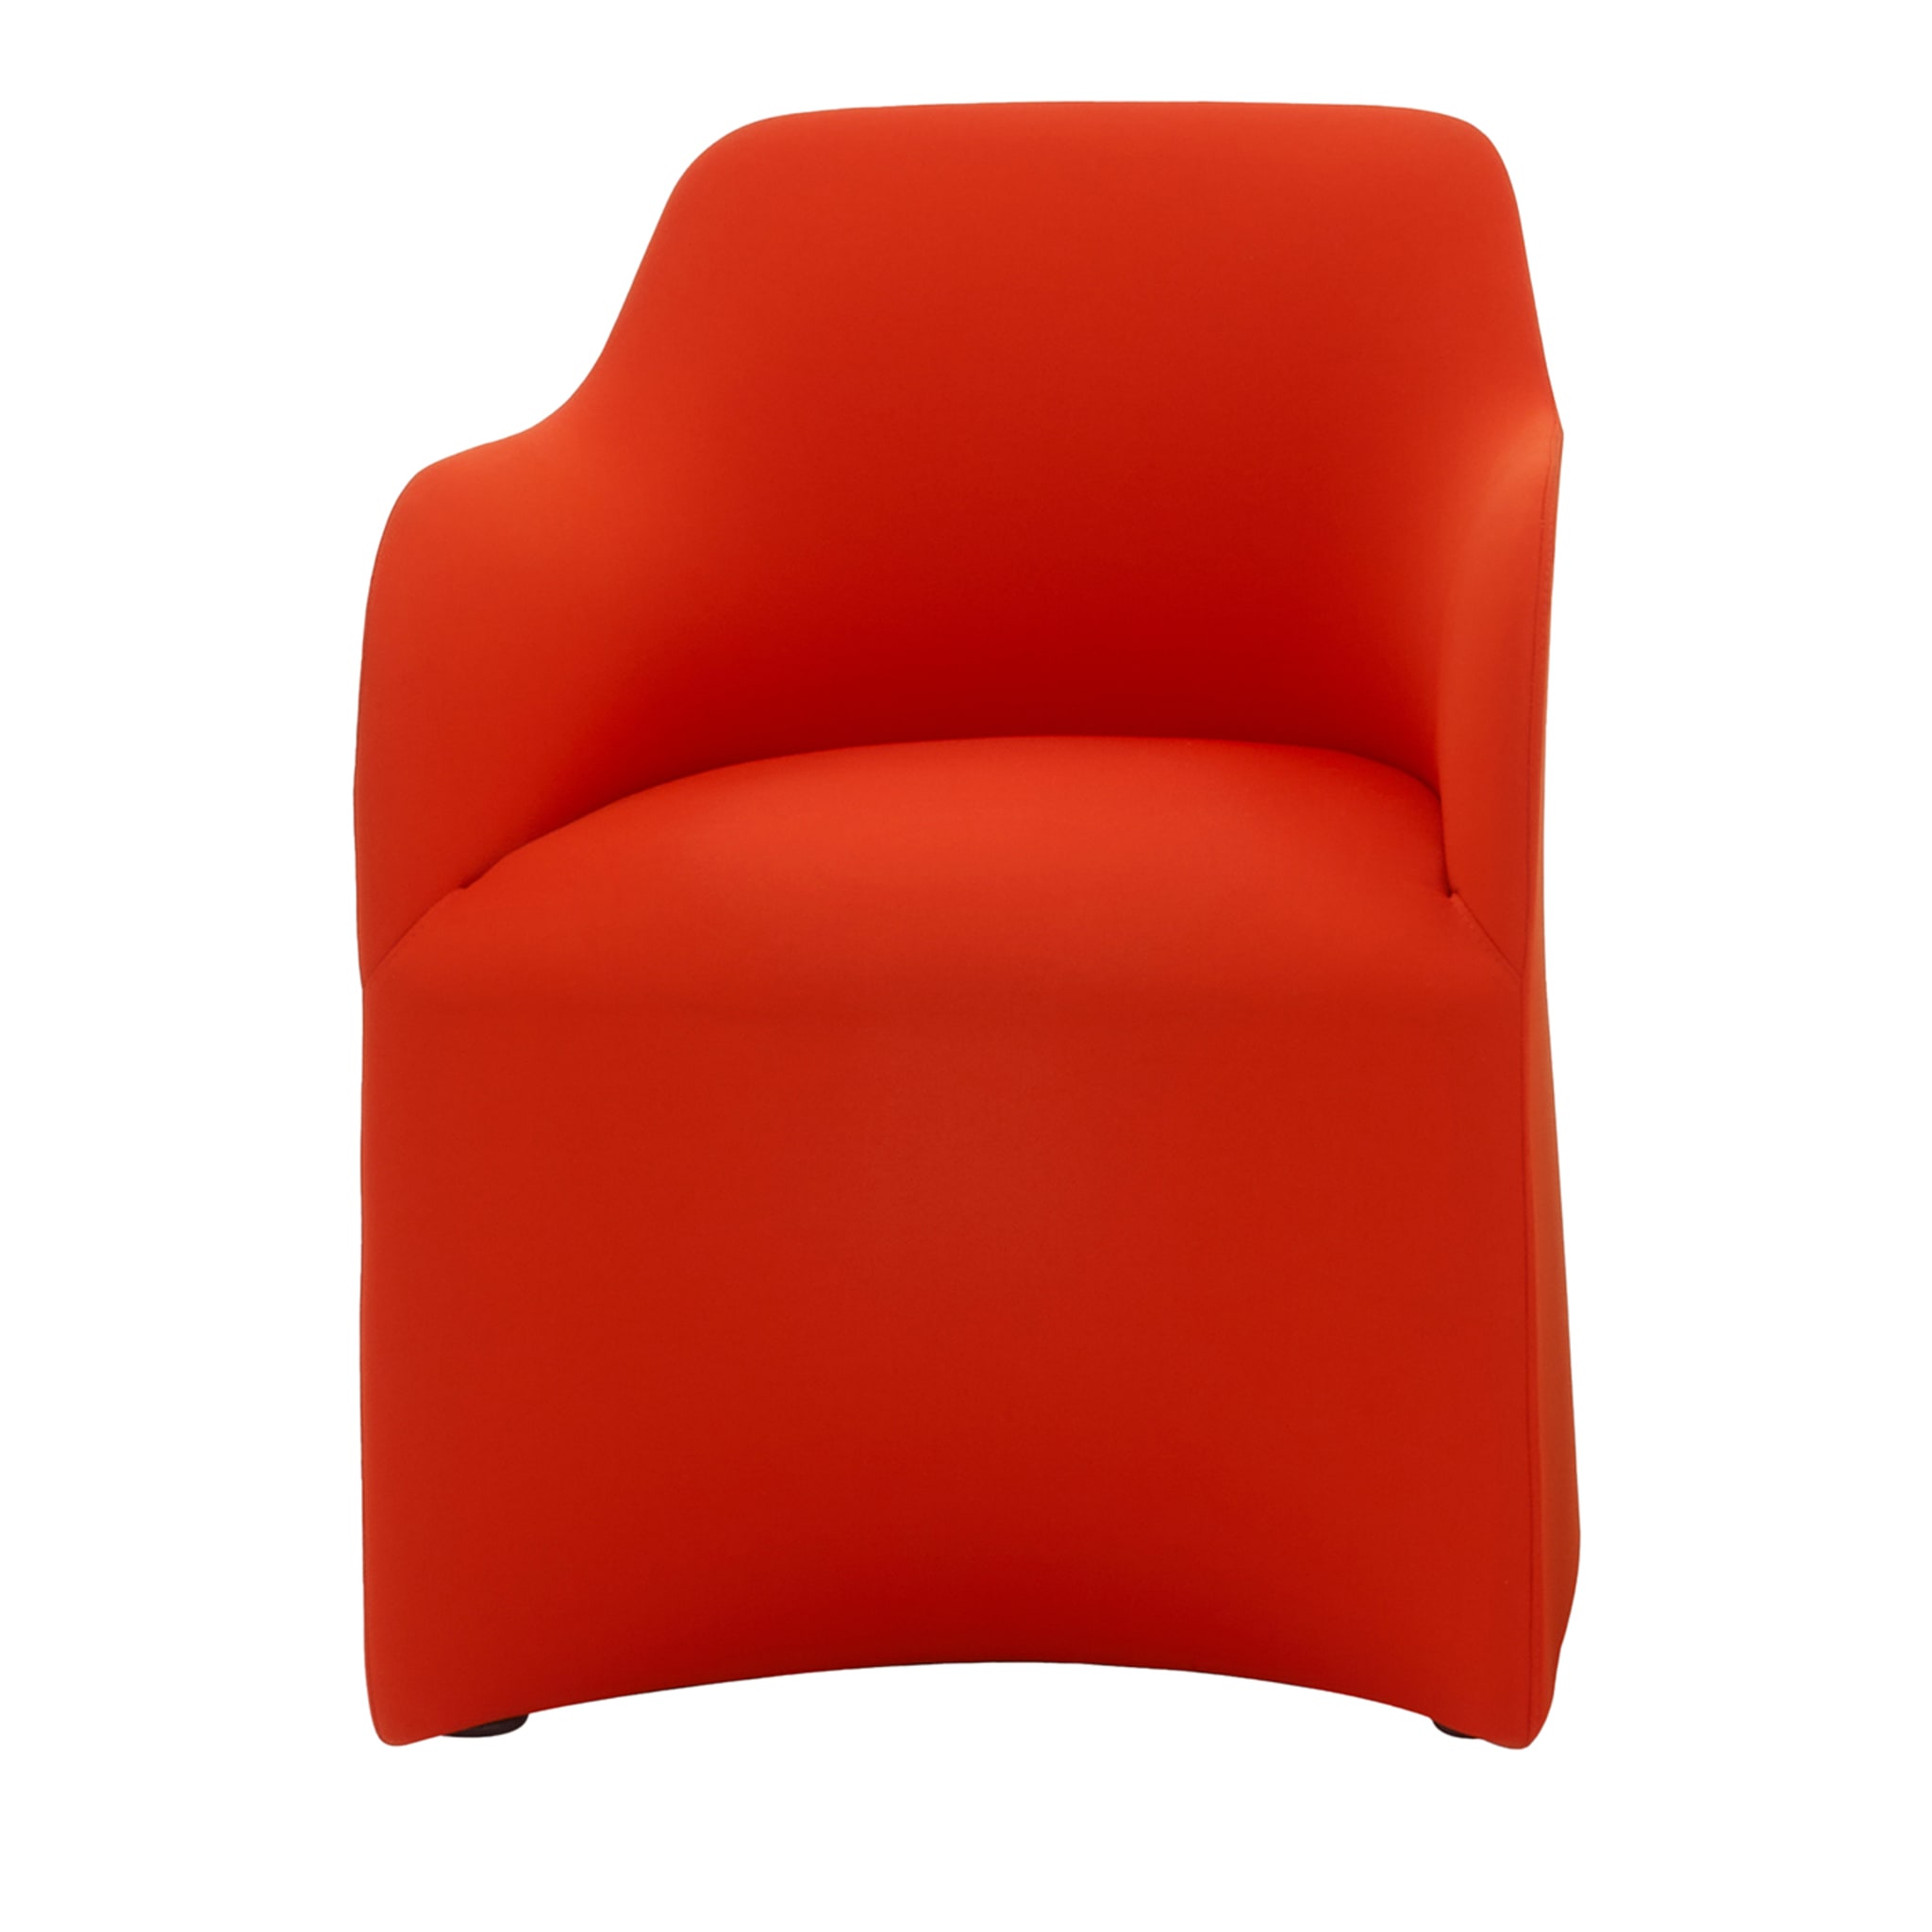 Maggy Big Red Armchair by Basaglia + Rota Nodari - Vue principale